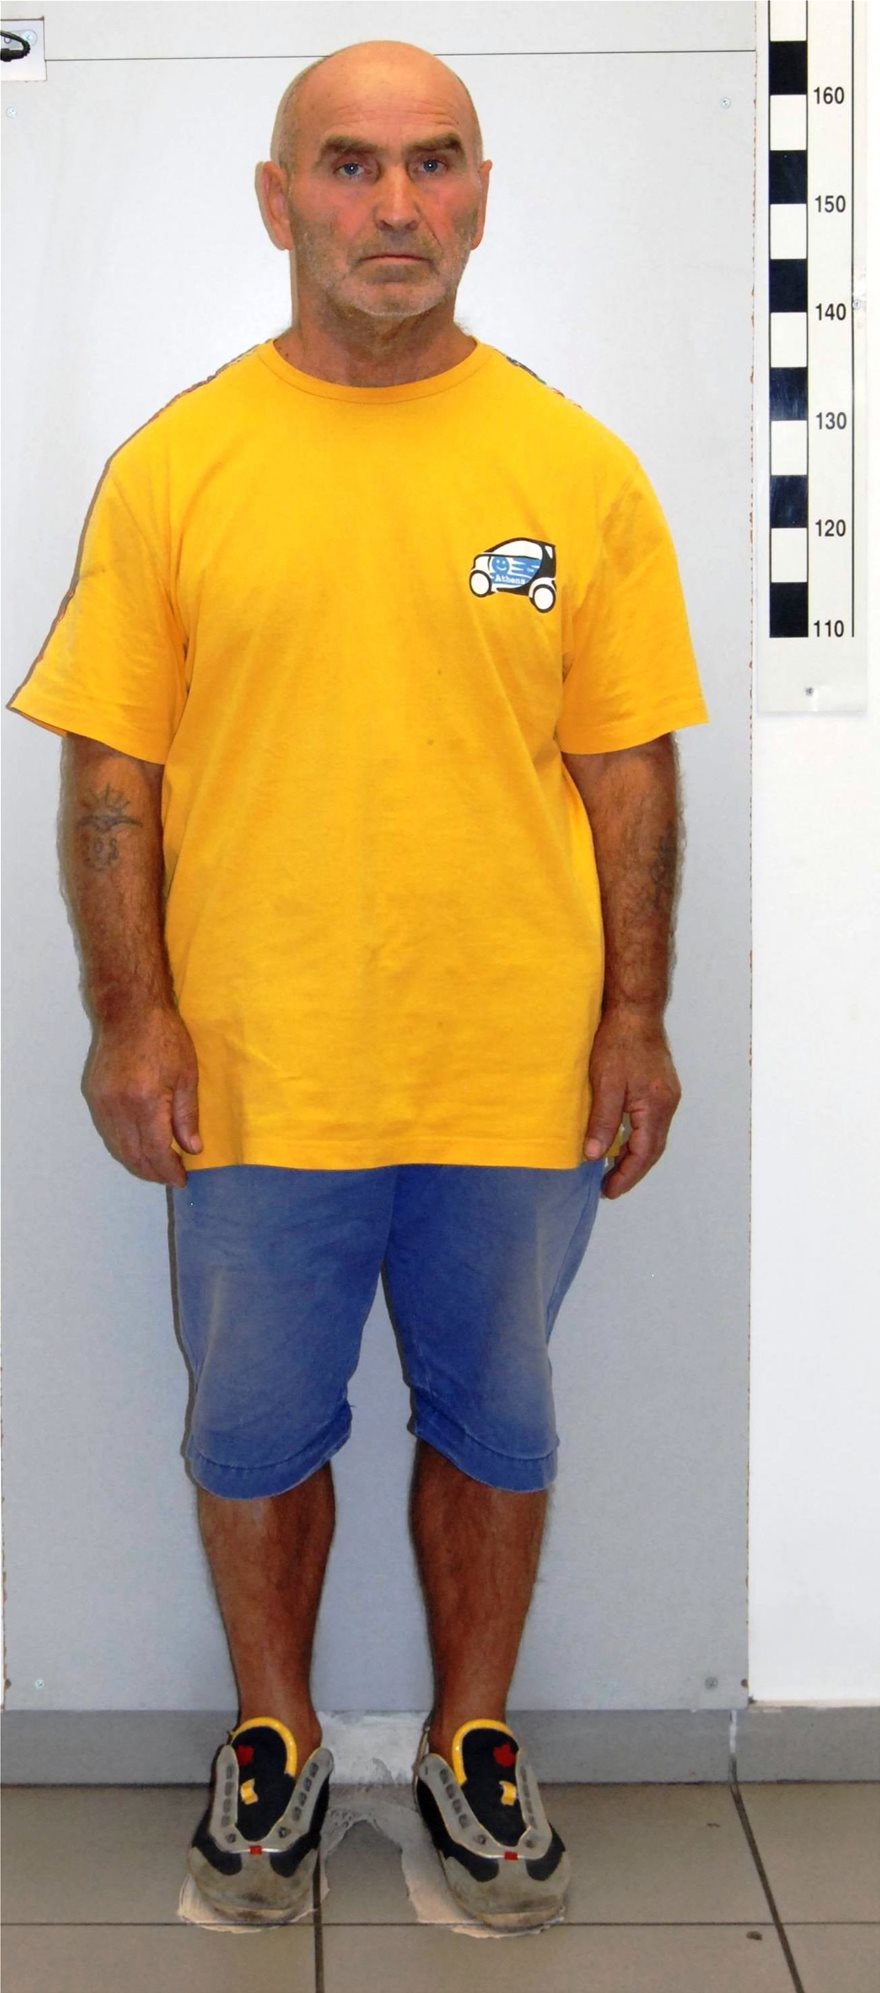 Αυτός είναι ο 63χρονος που κατηγορείται για ασέλγεια σε βάρος ανηλίκων - Φωτογραφία 2